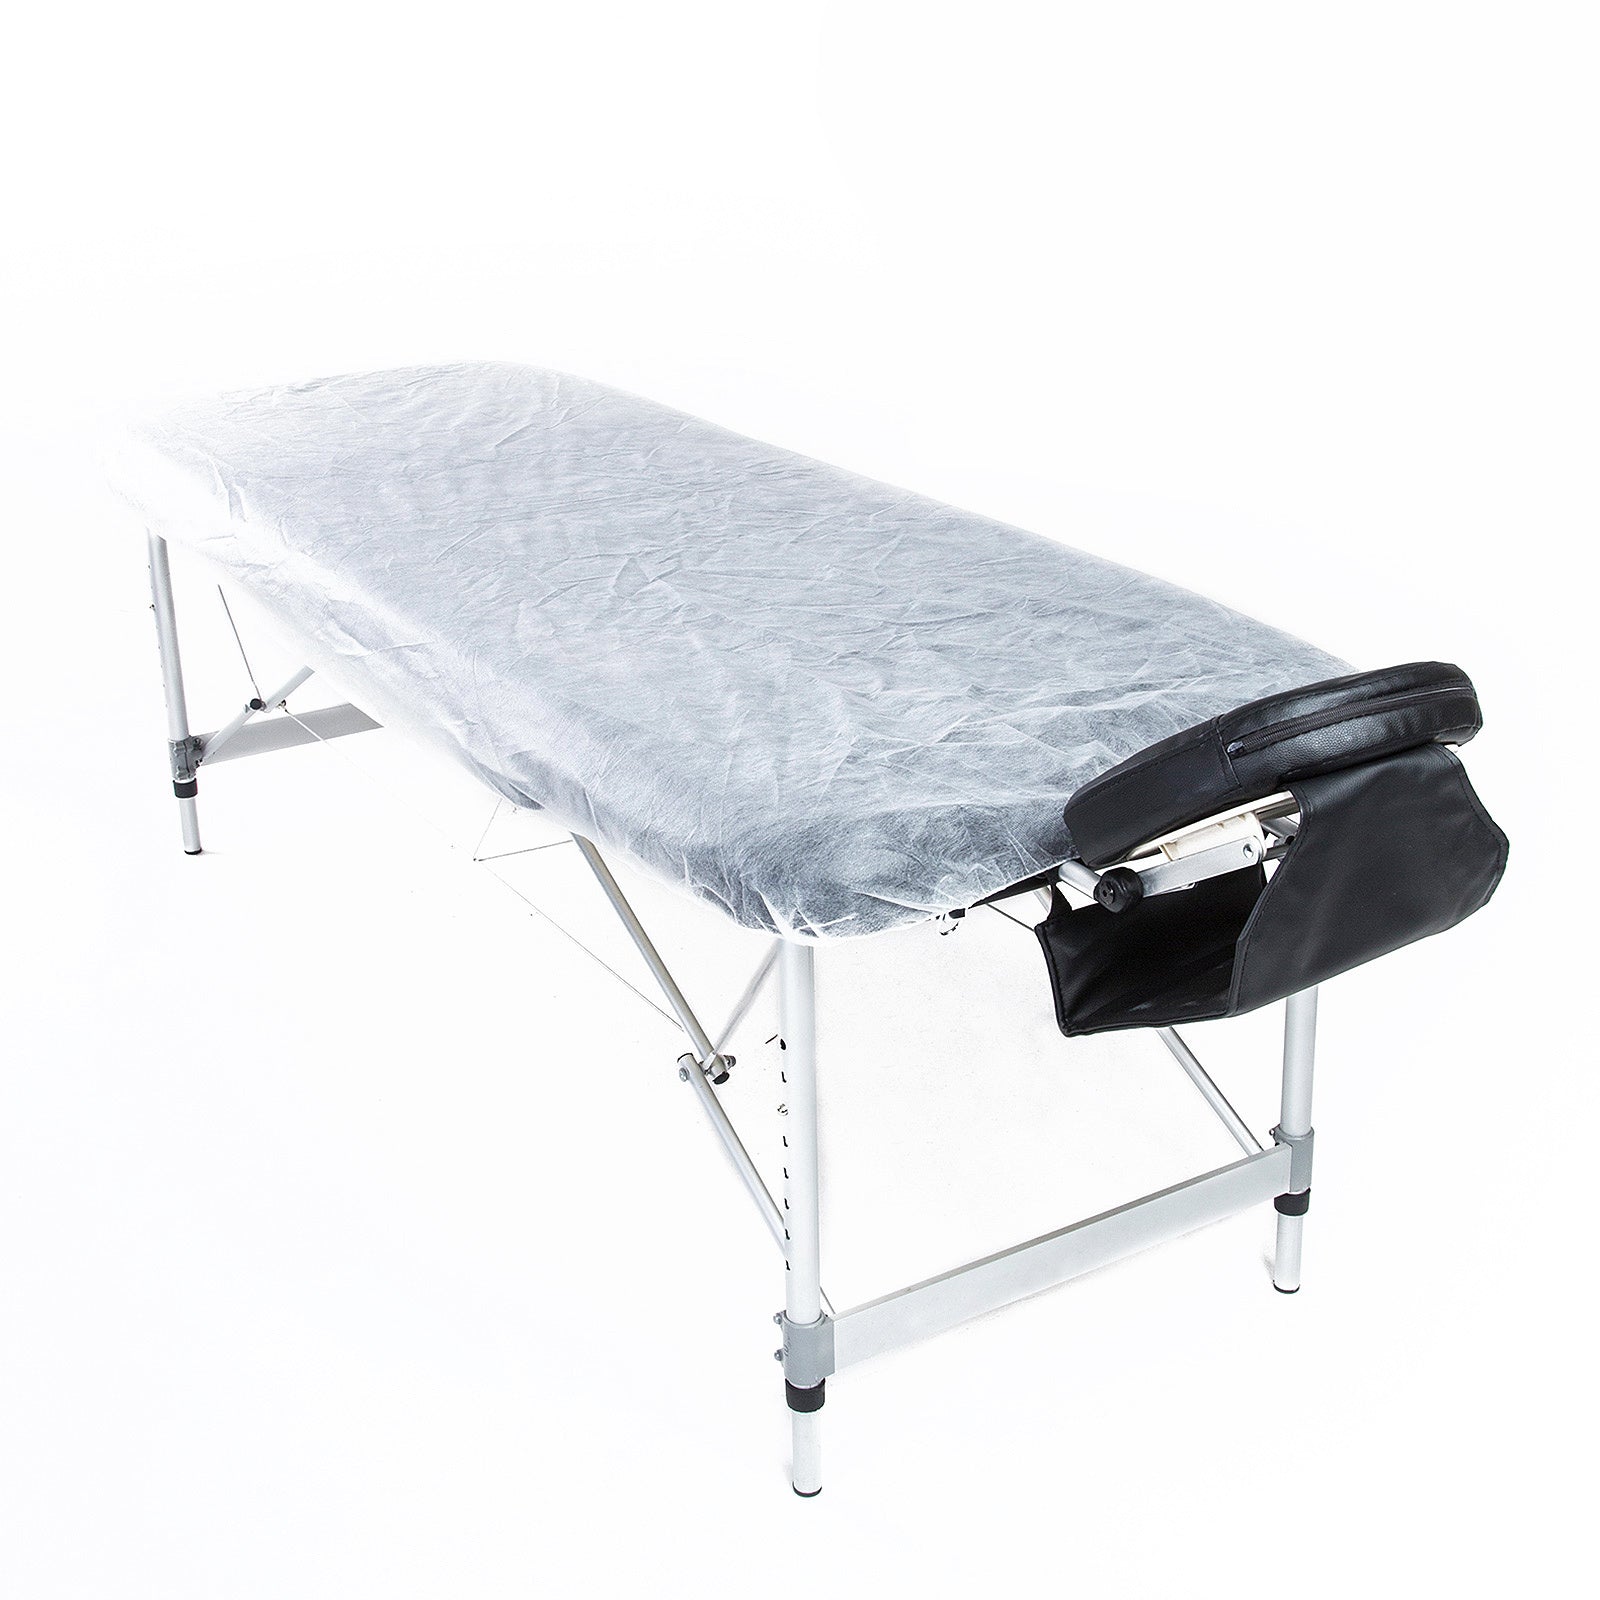 60pcs Disposable Massage Table Sheet Cover 180cm x 75cm - image1